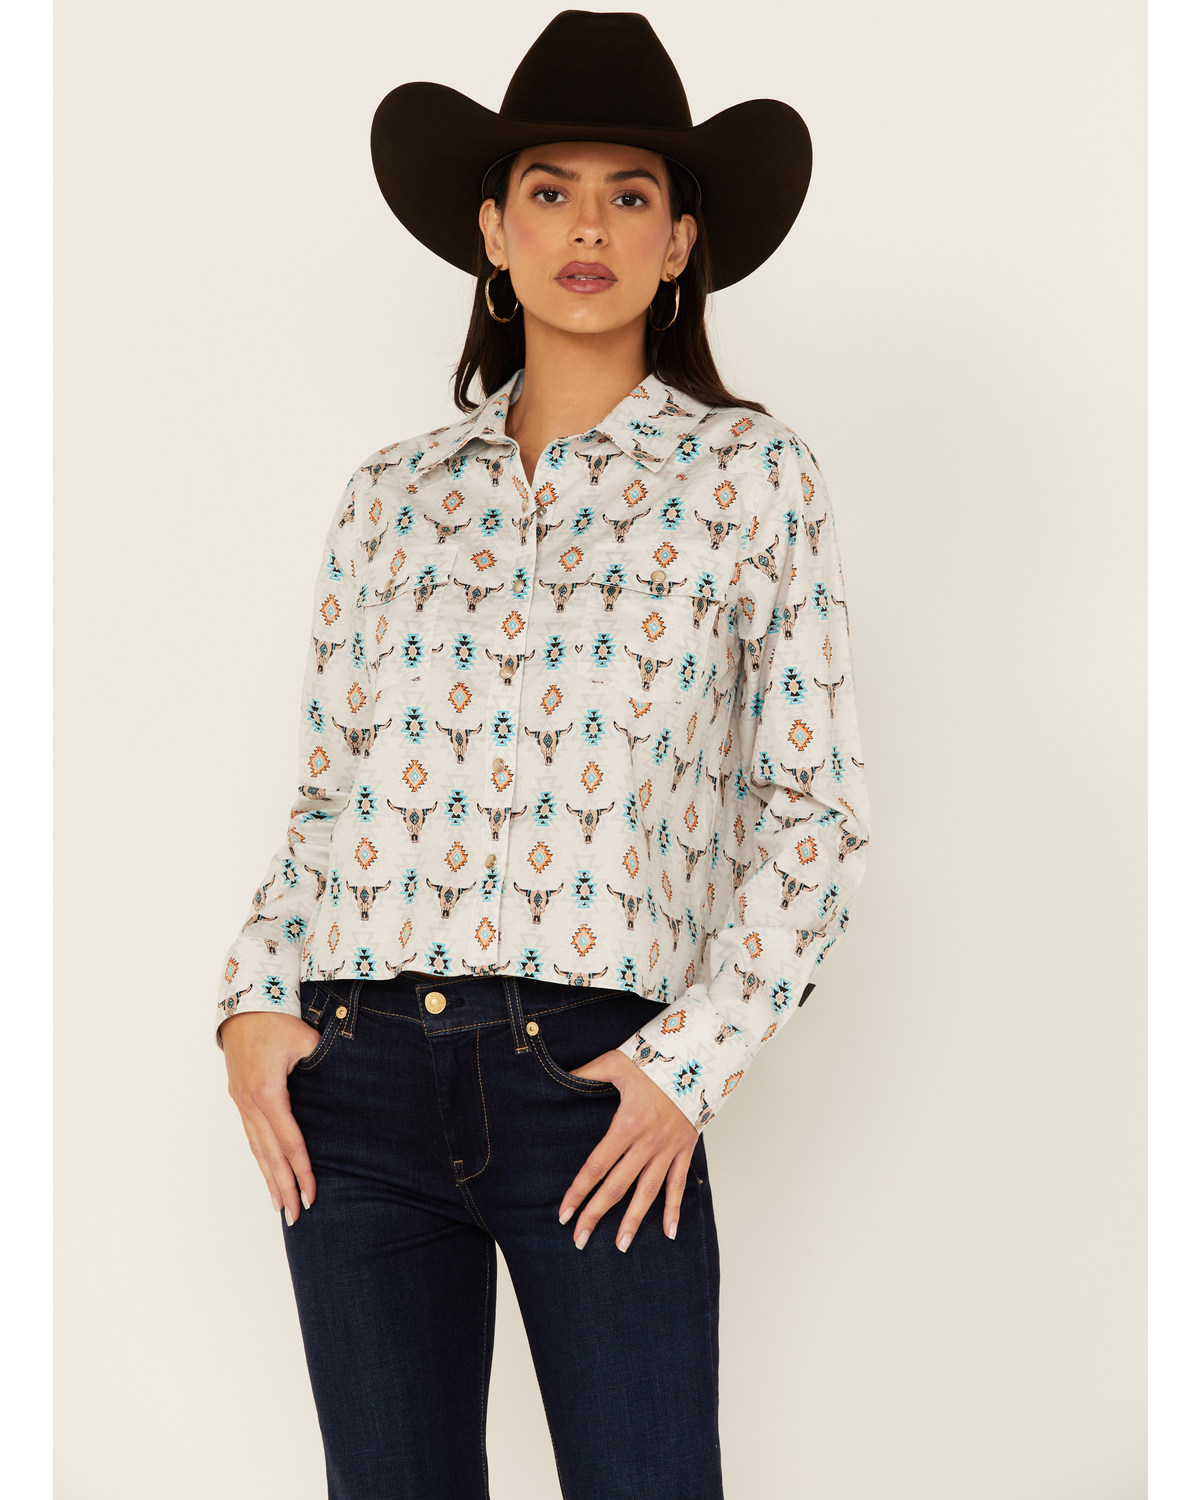 Panhandle Women's Steer Print Long Sleeve Snap Western Shirt